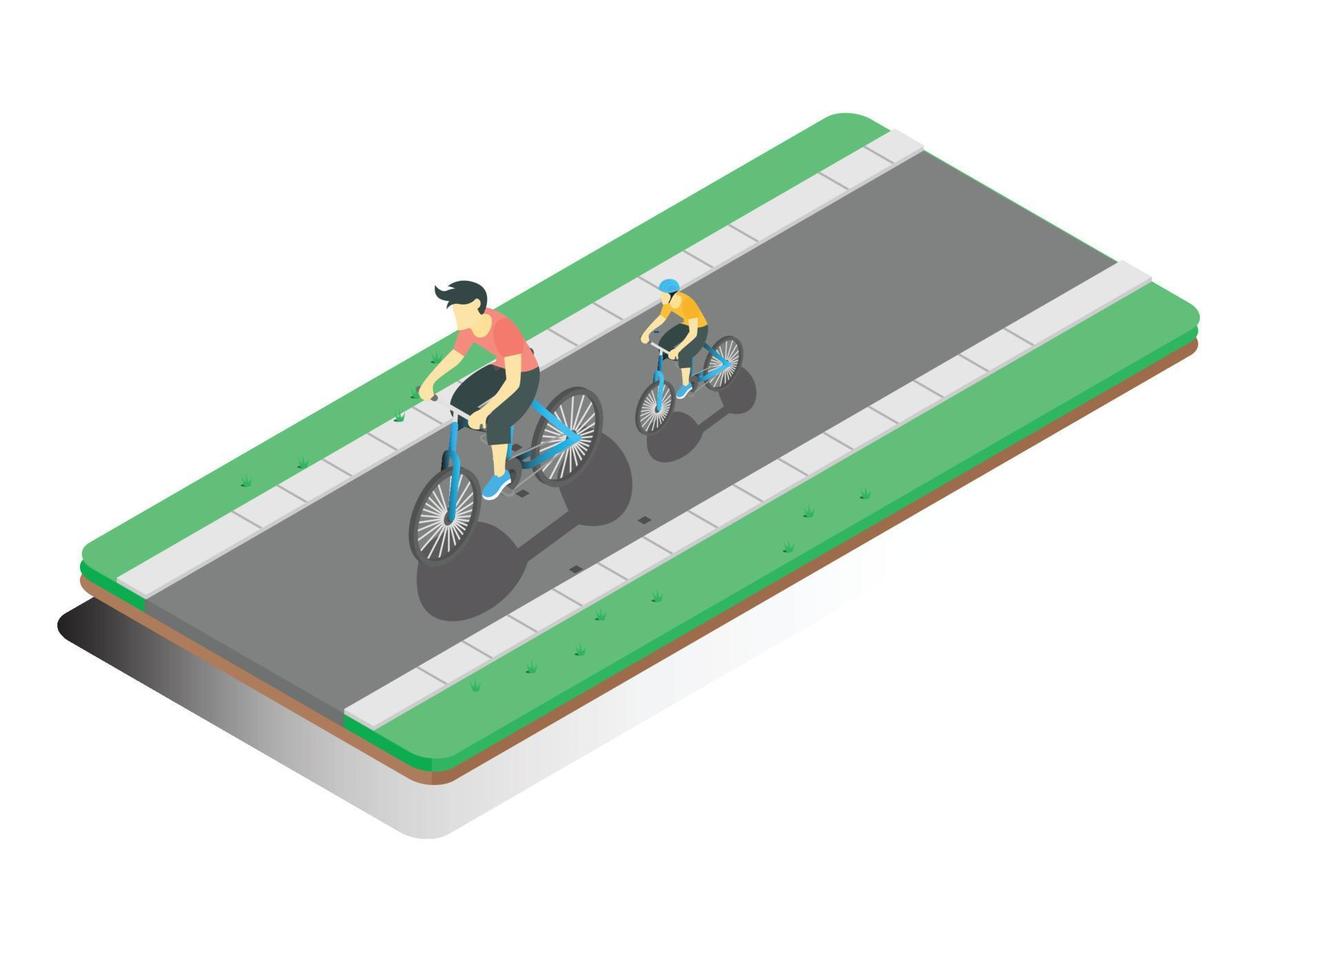 Diseño plano de ilustración isométrica 3d de ciclismo en la carretera, durante la mañana, ilustración isométrica vectorial adecuada para diagramas, infografías y otros activos gráficos vector